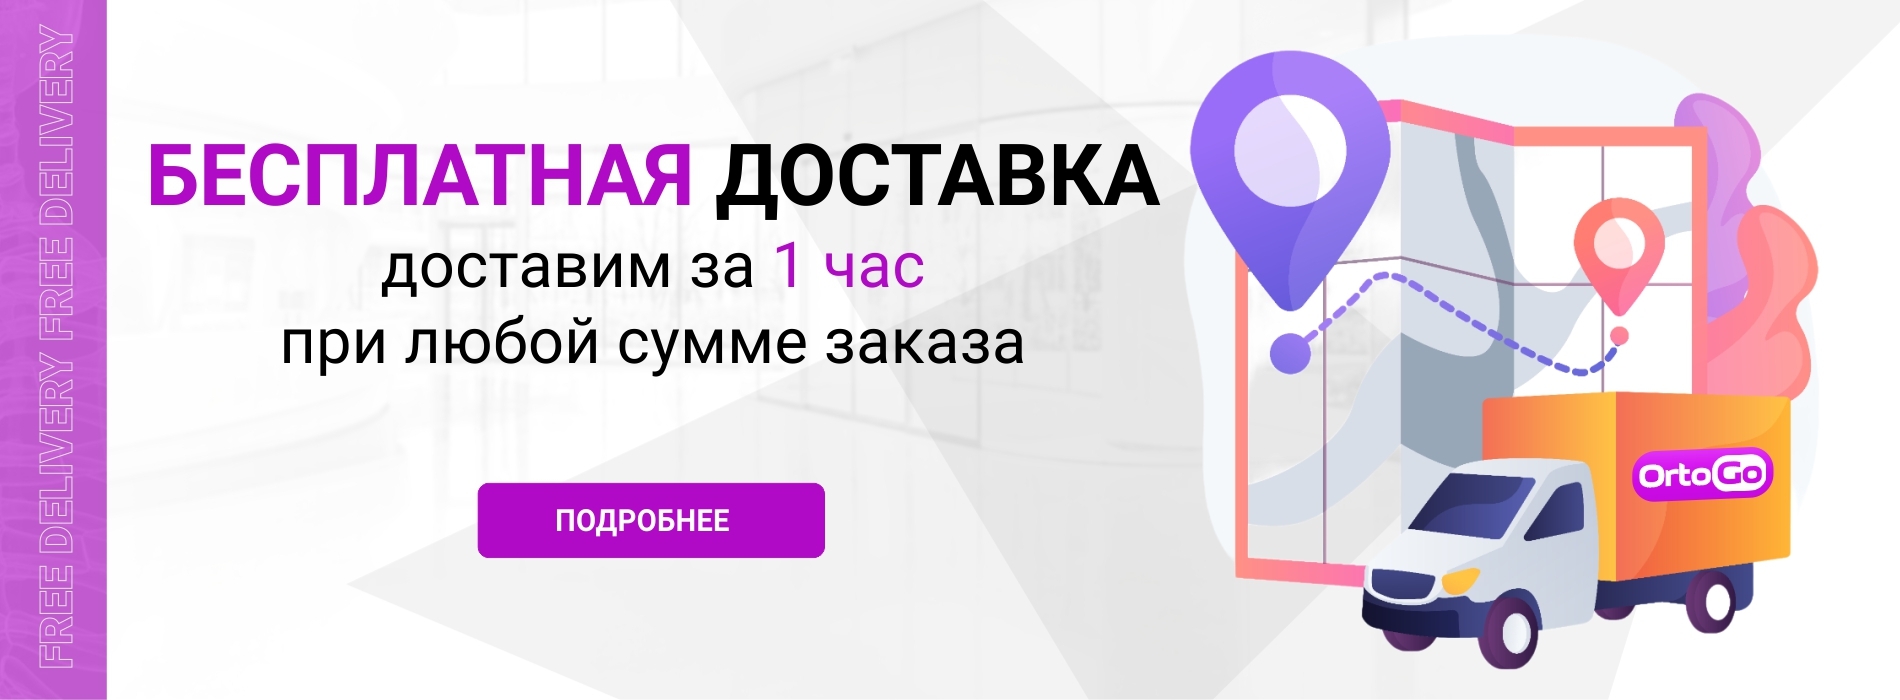 OrtoGo.ru. Срочная бесплатная доставка